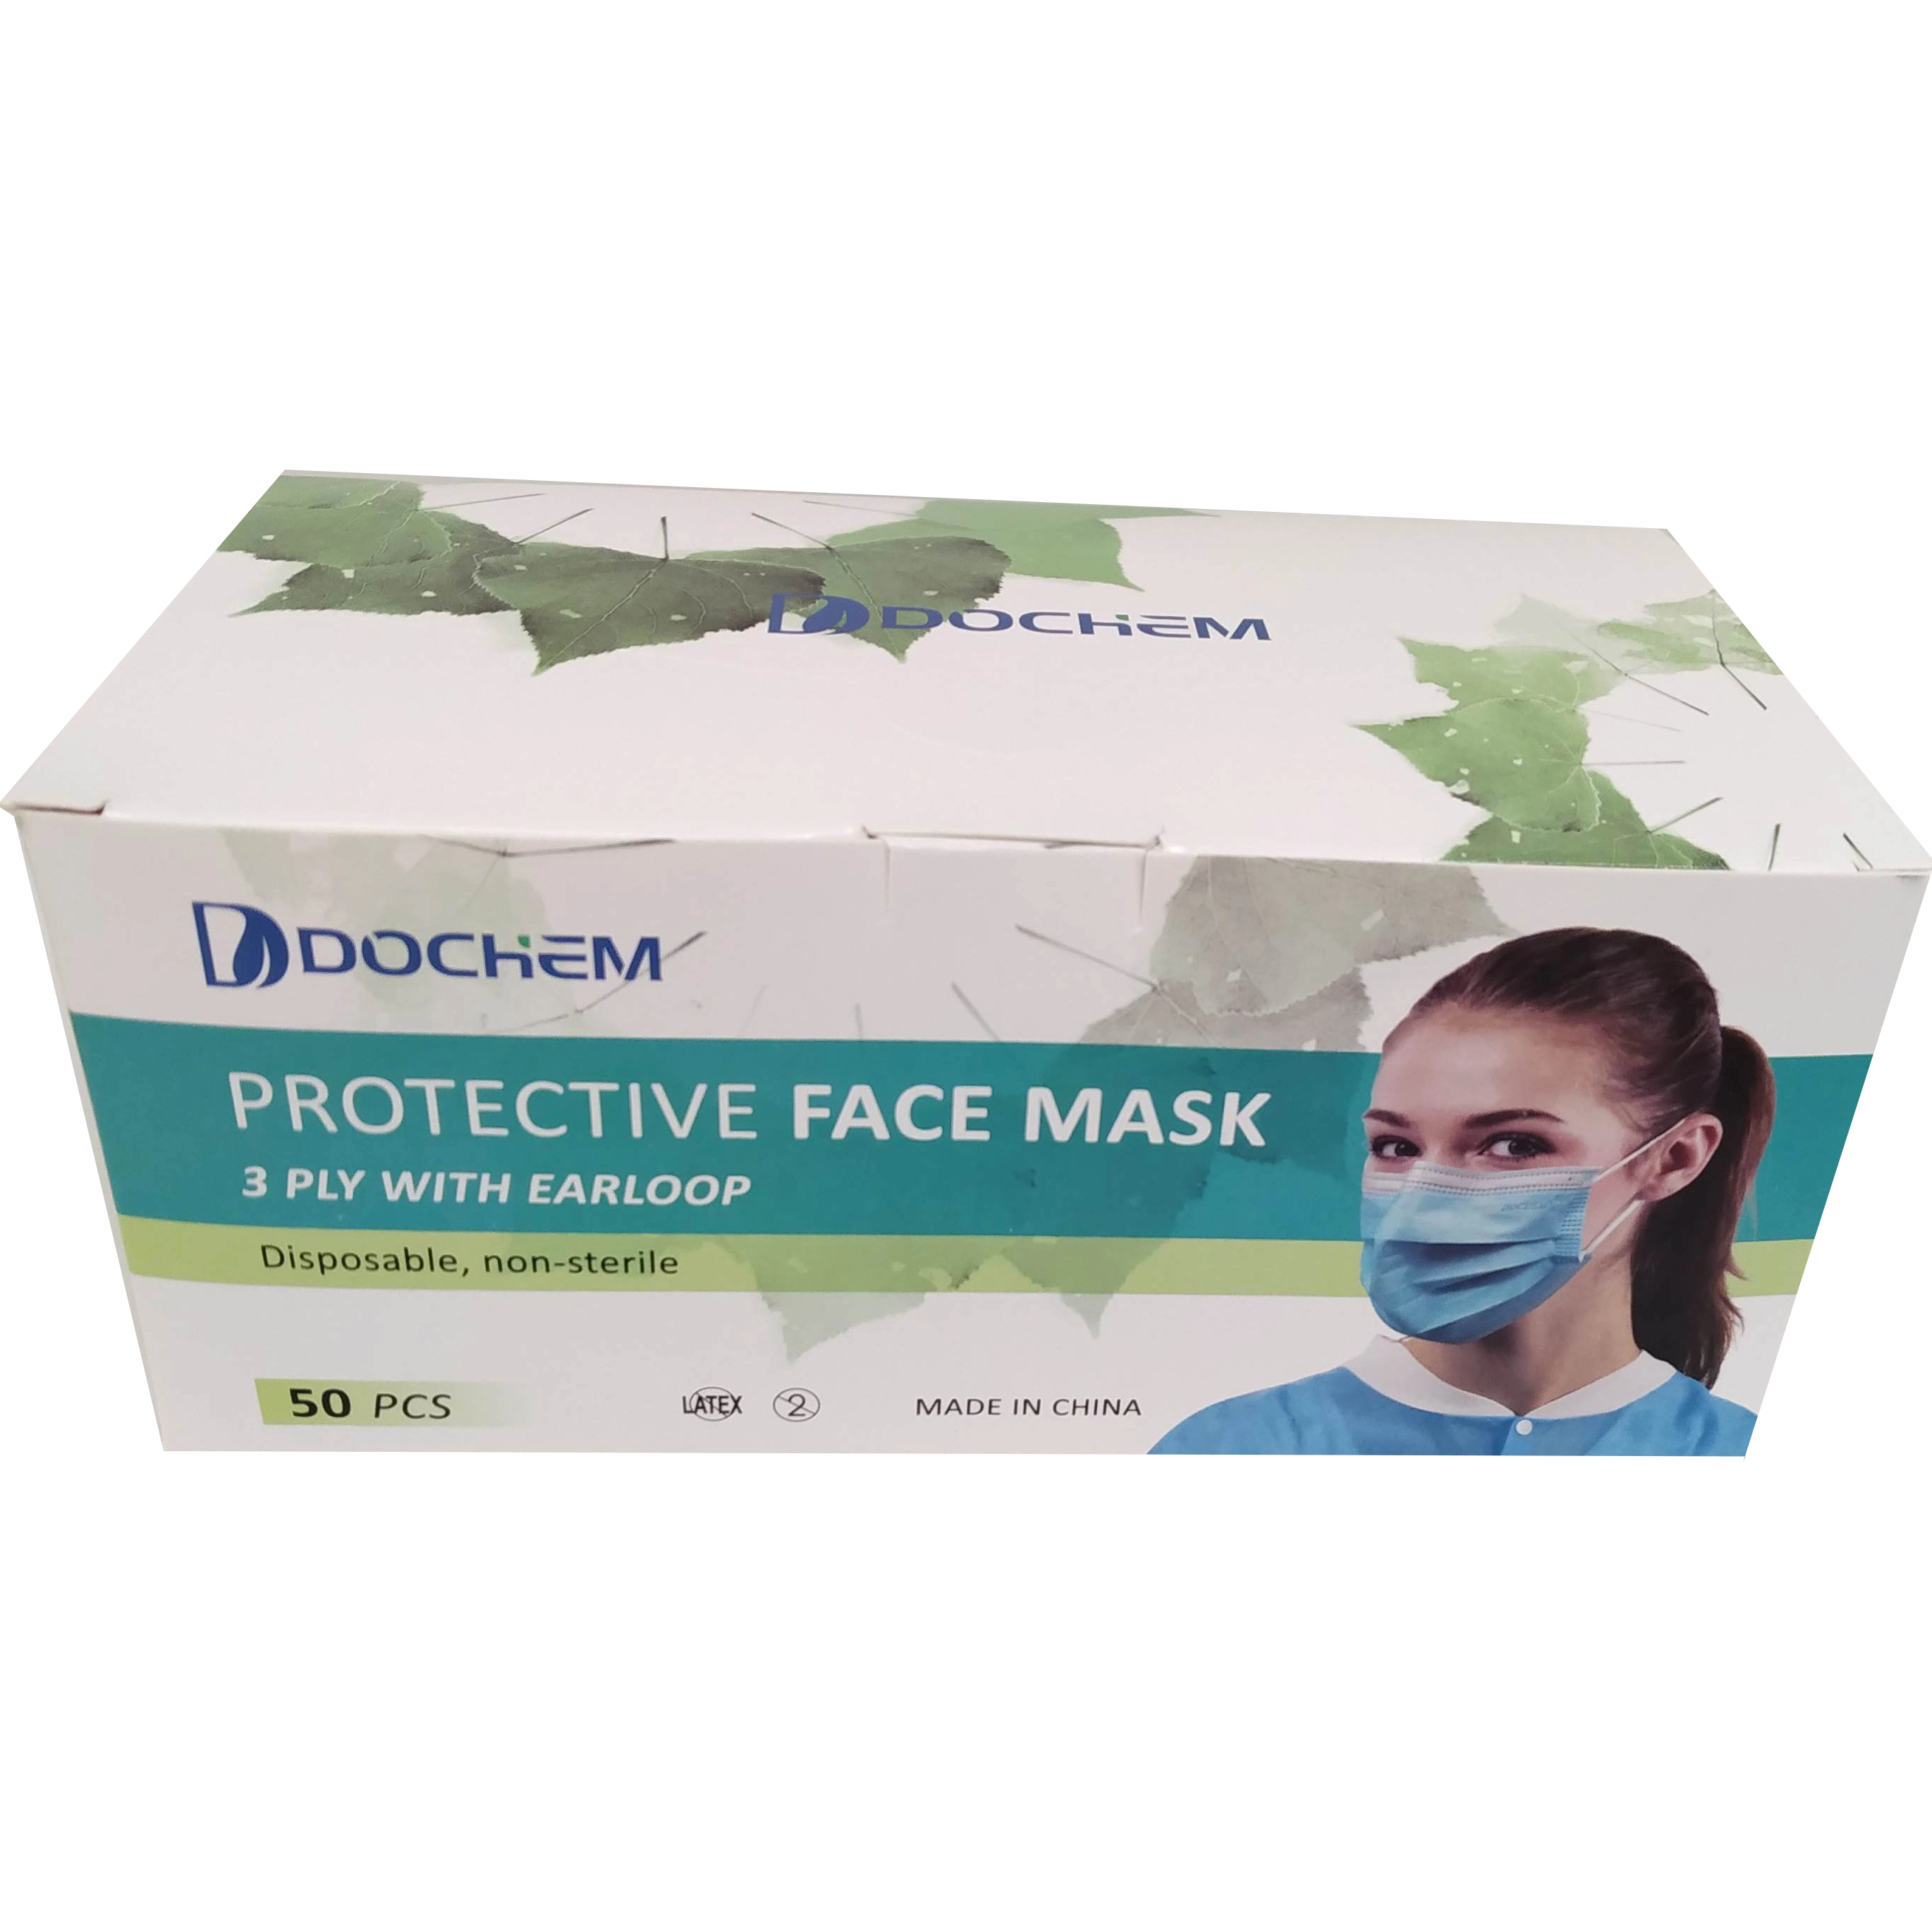 Dental-Medical Face Mask, Premium, 50 pcs, 3 ply, earloop, in 3 colors